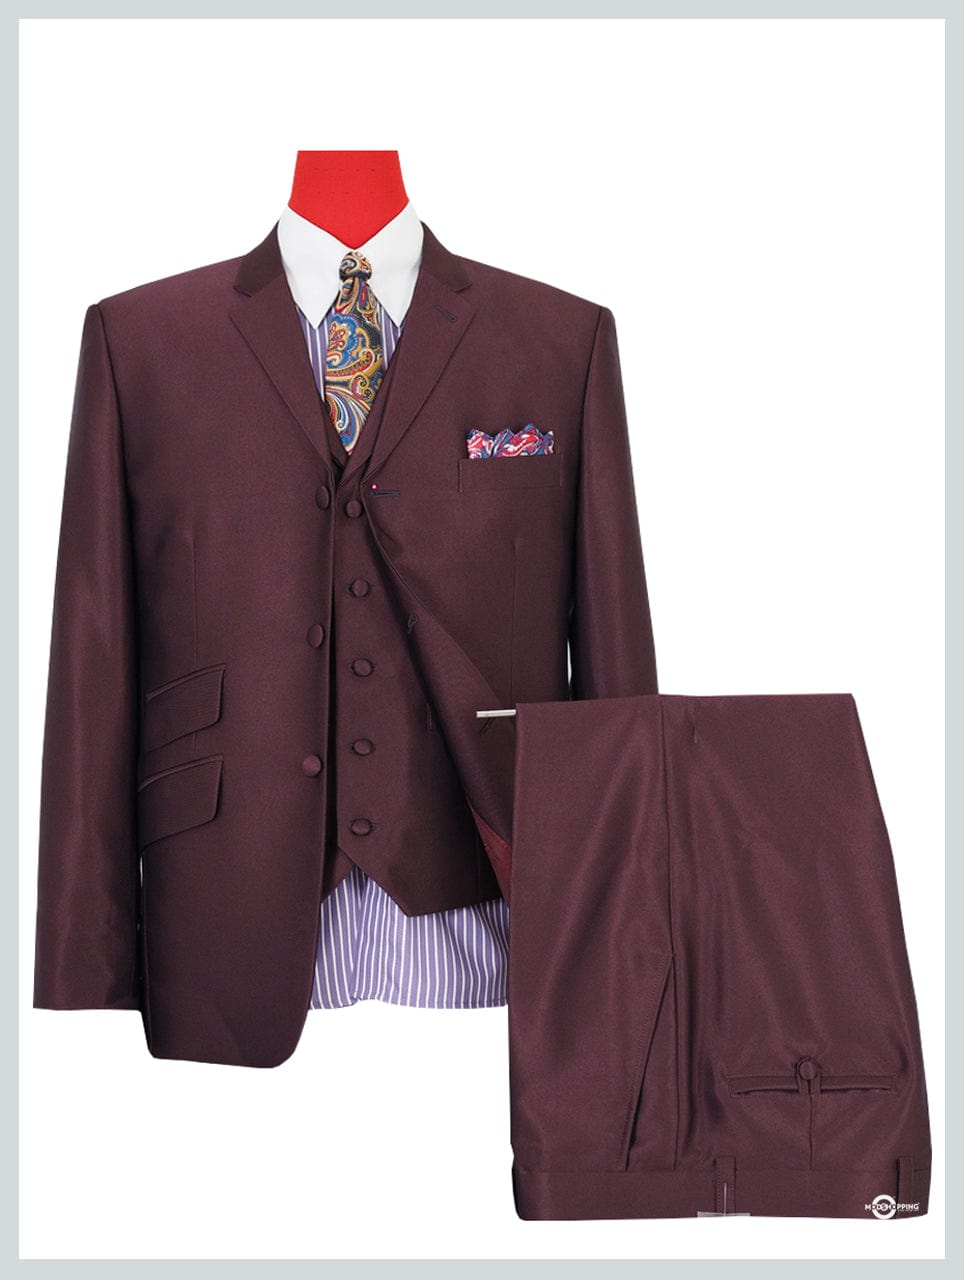 mod suit,skinhead suit Charcoal tonic suit 3 button suit slim fit mod suit  | eBay